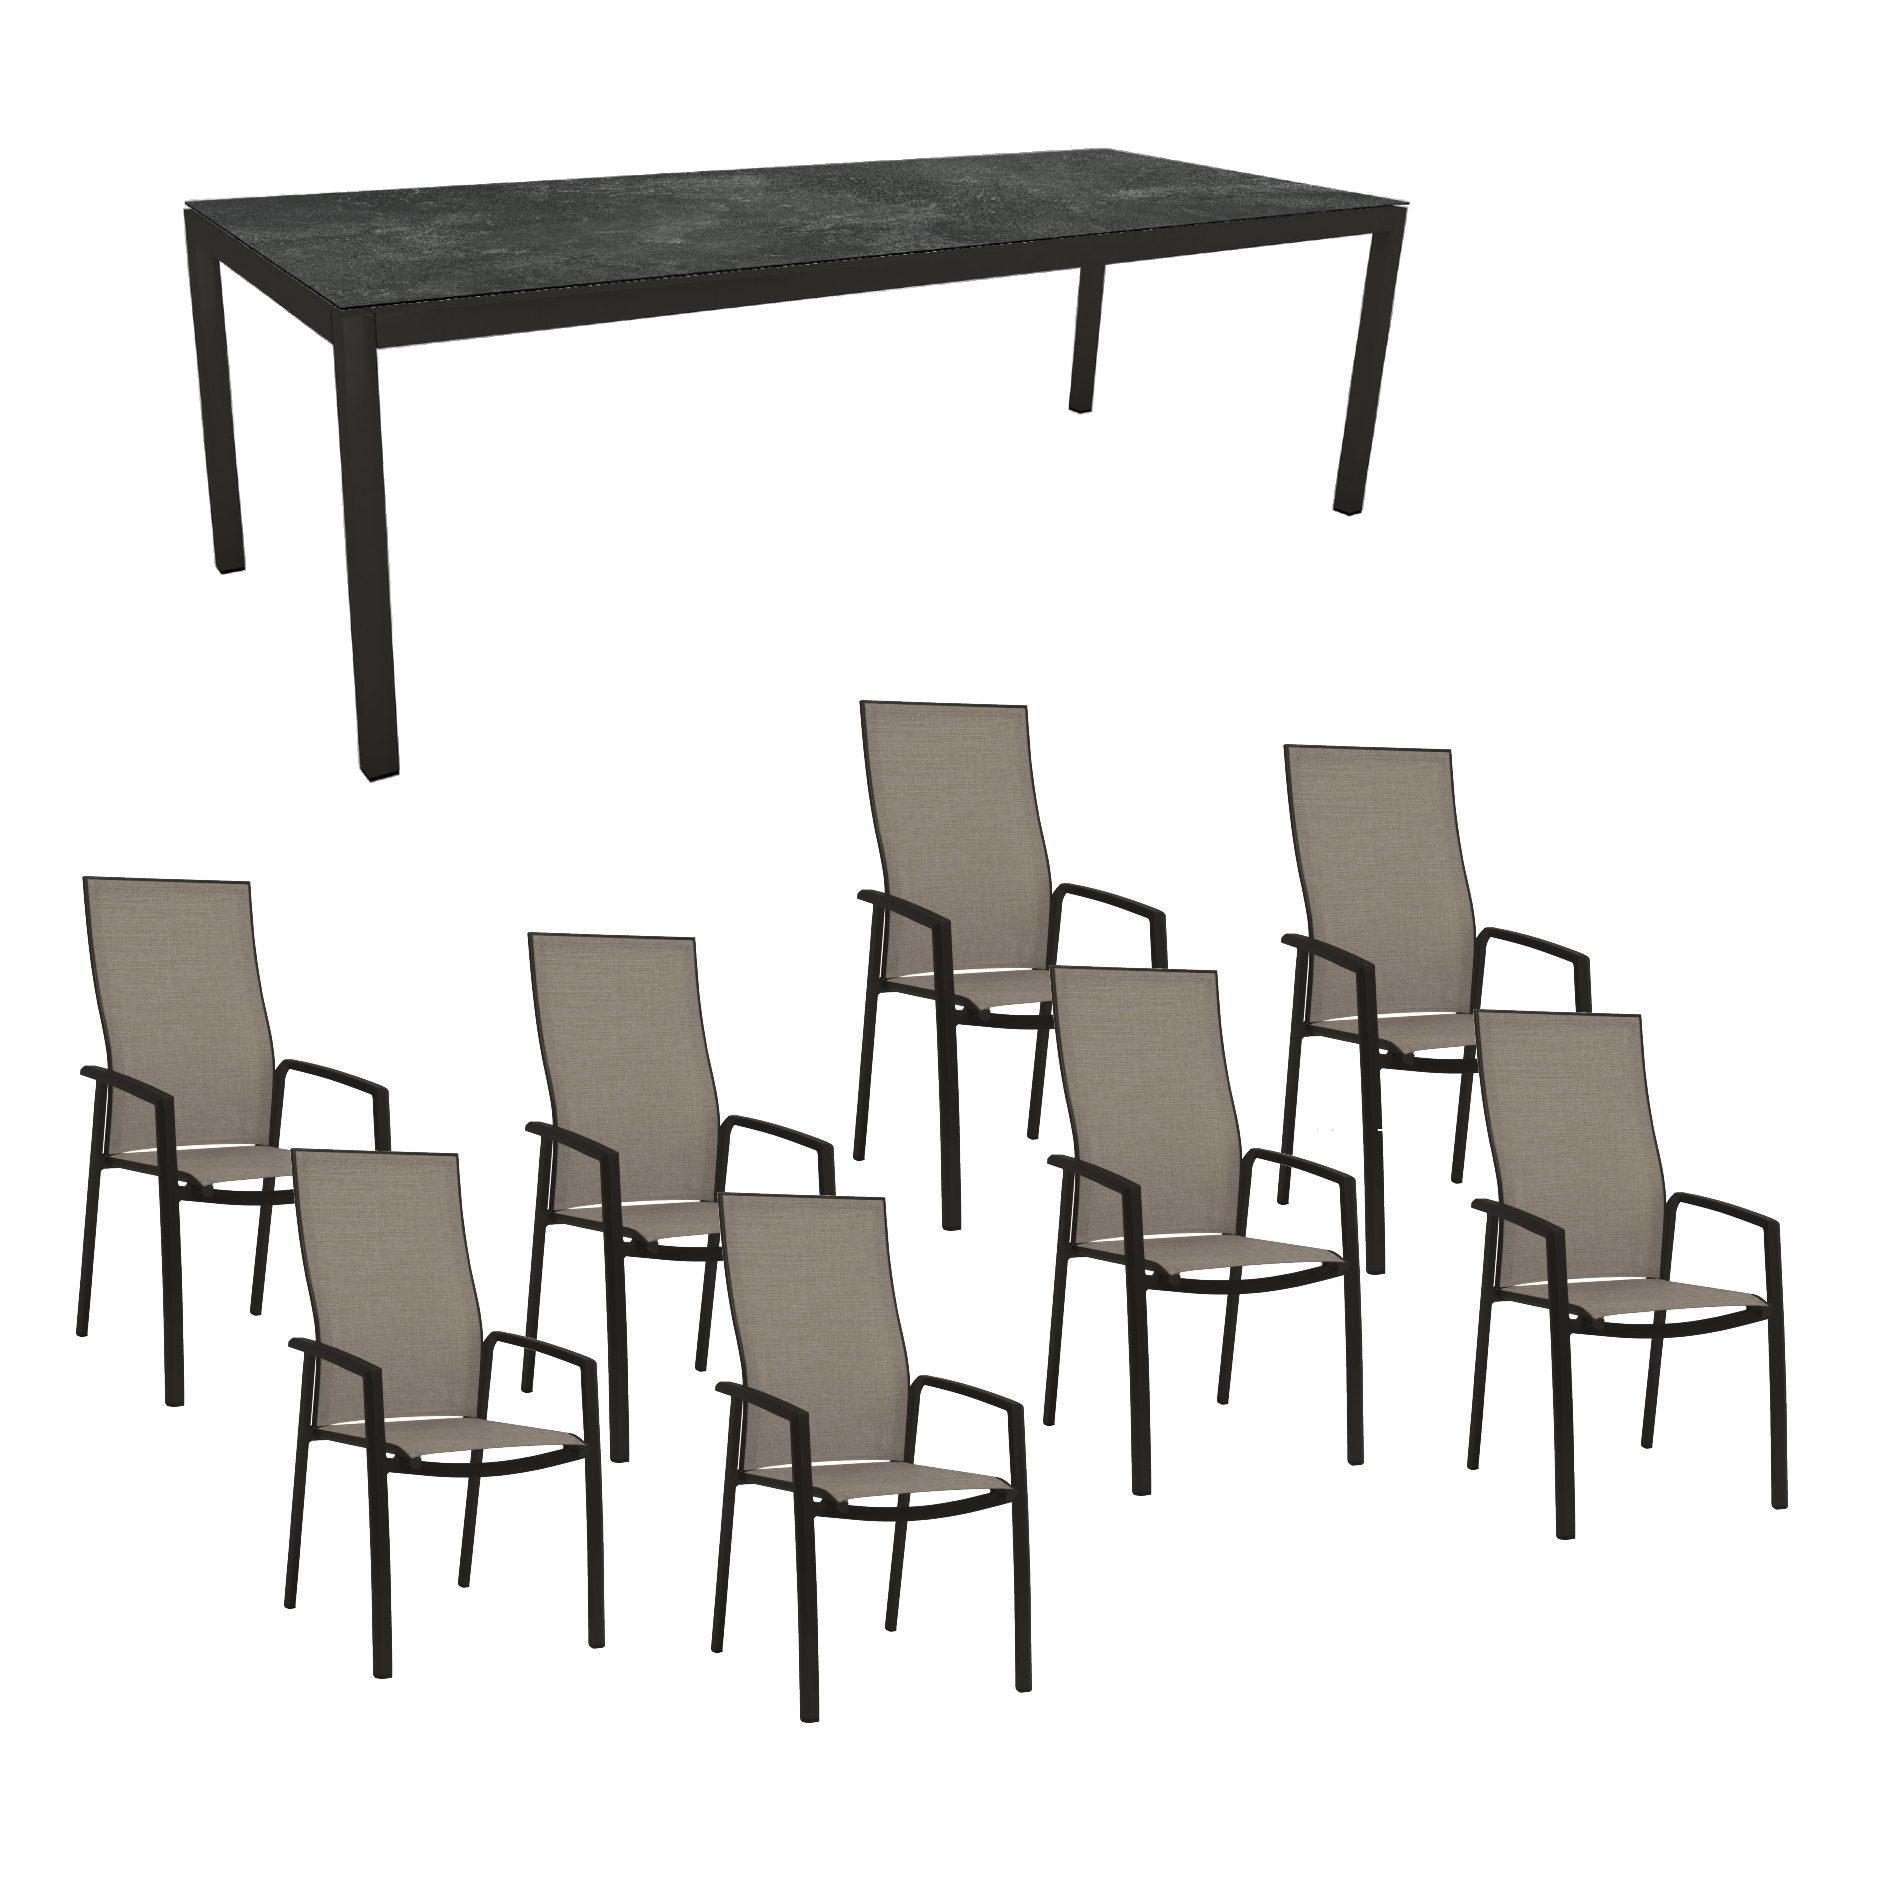 Stern Gartenmöbel-Set mit Hochlehner "Kari", Textilen Leinen grau und Gartentisch 250x100 cm, Gestelle Alu schwarz matt, Tischplatte HPL Slate